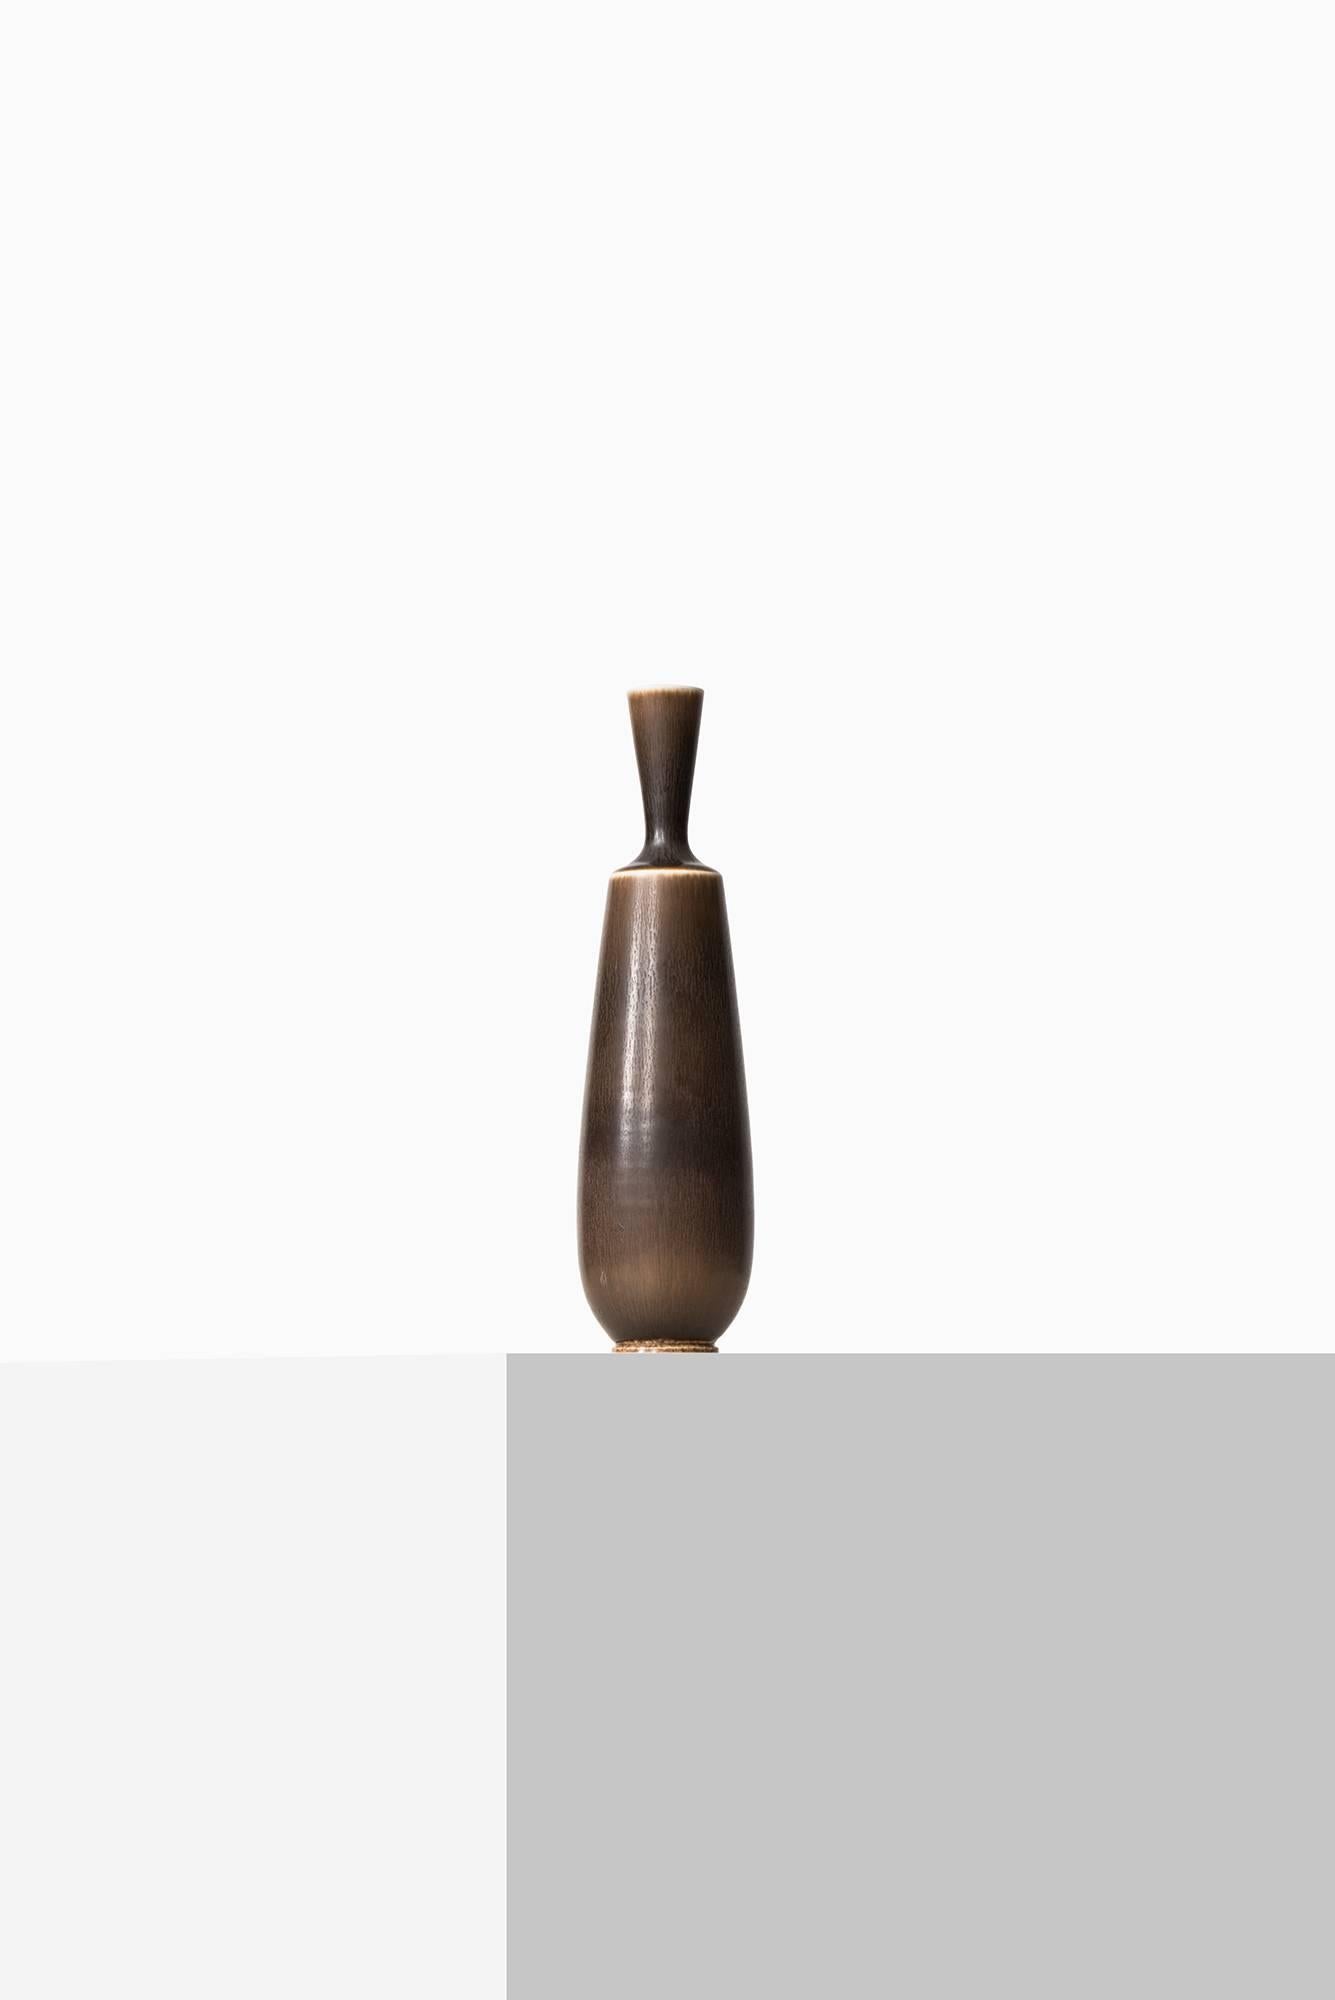 Rare ceramic vase designed by Berndt Friberg. Produced by Gustavsberg in Sweden.